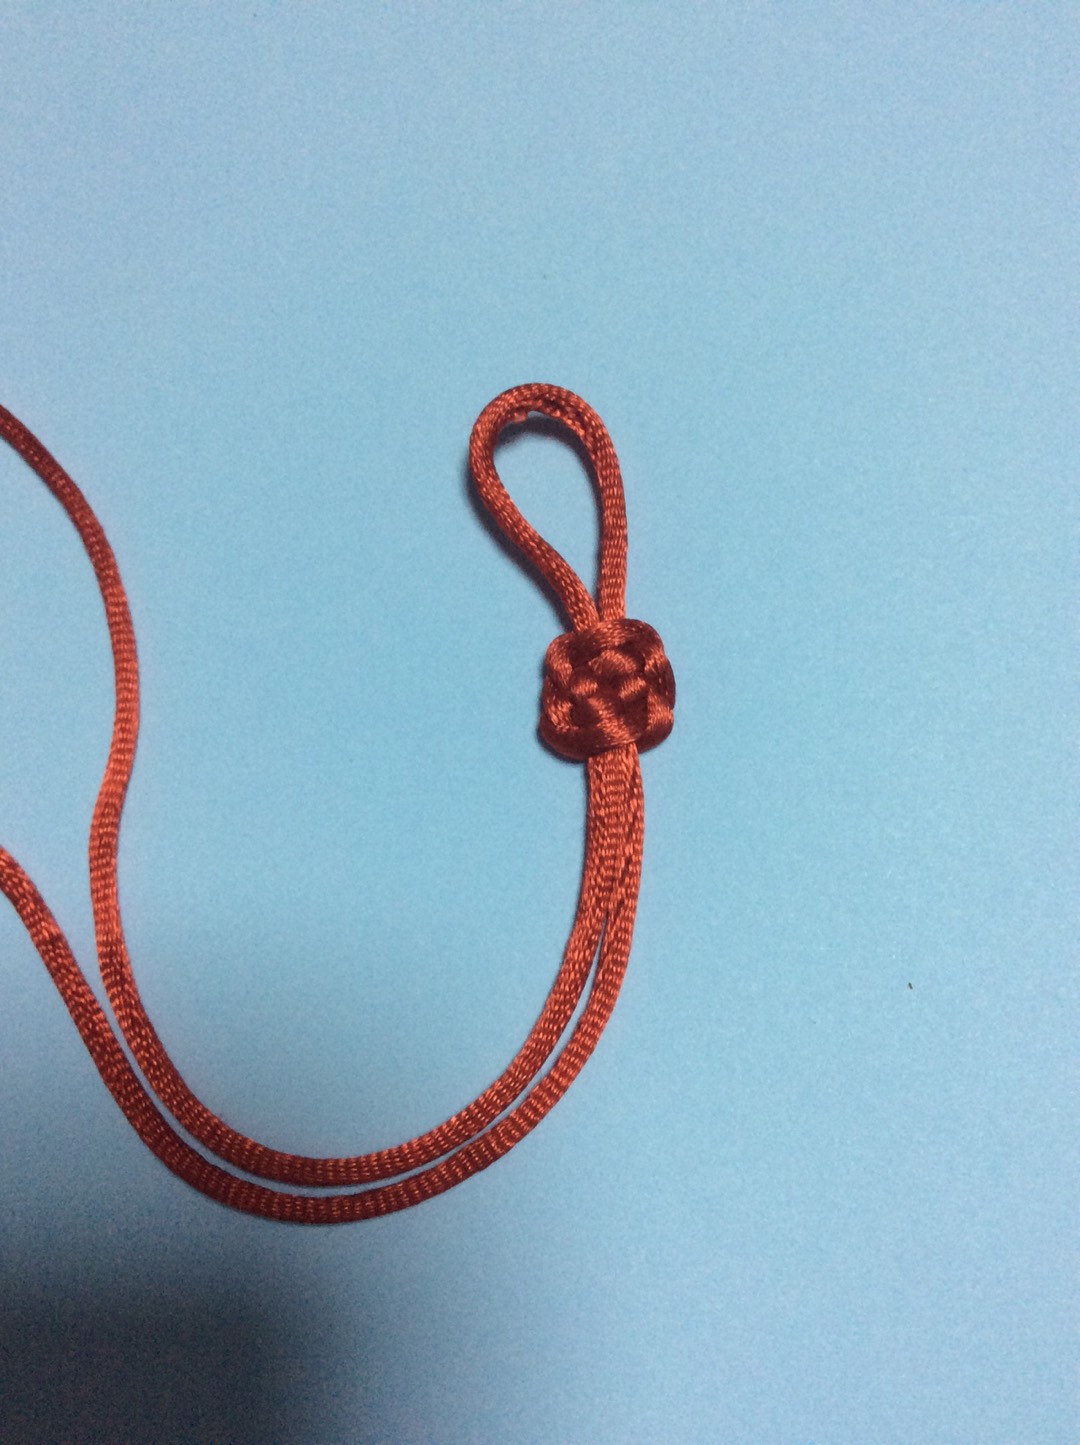 藻井结。也称方平结
  藻井结可连续数个编成手链、腰带等